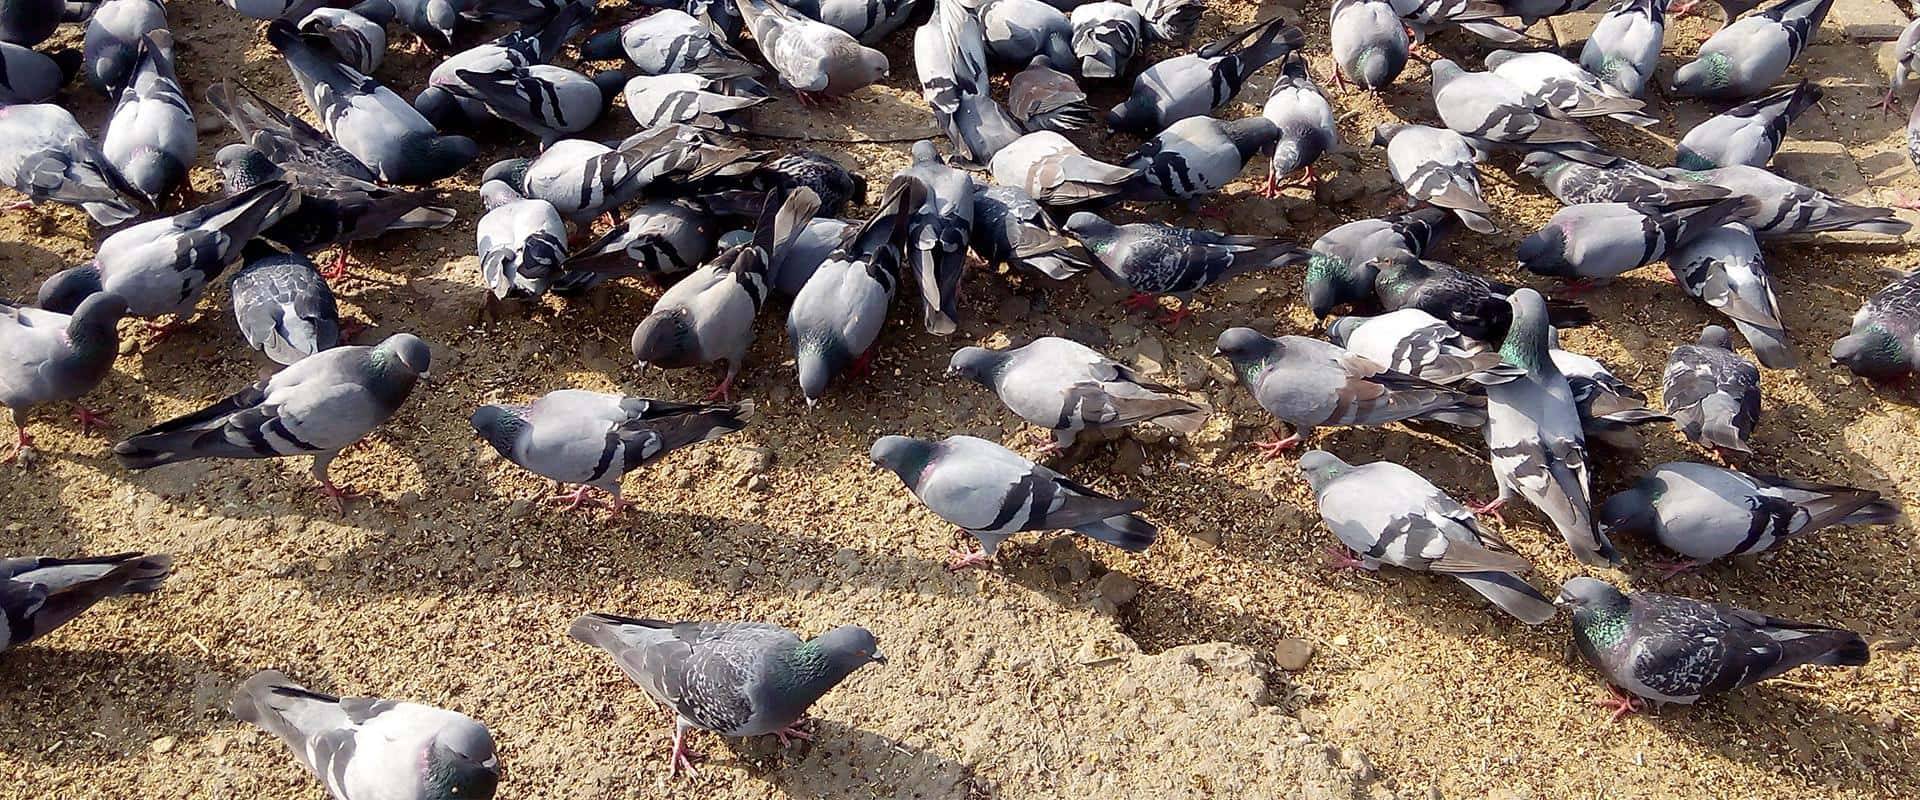 pigeons on ground